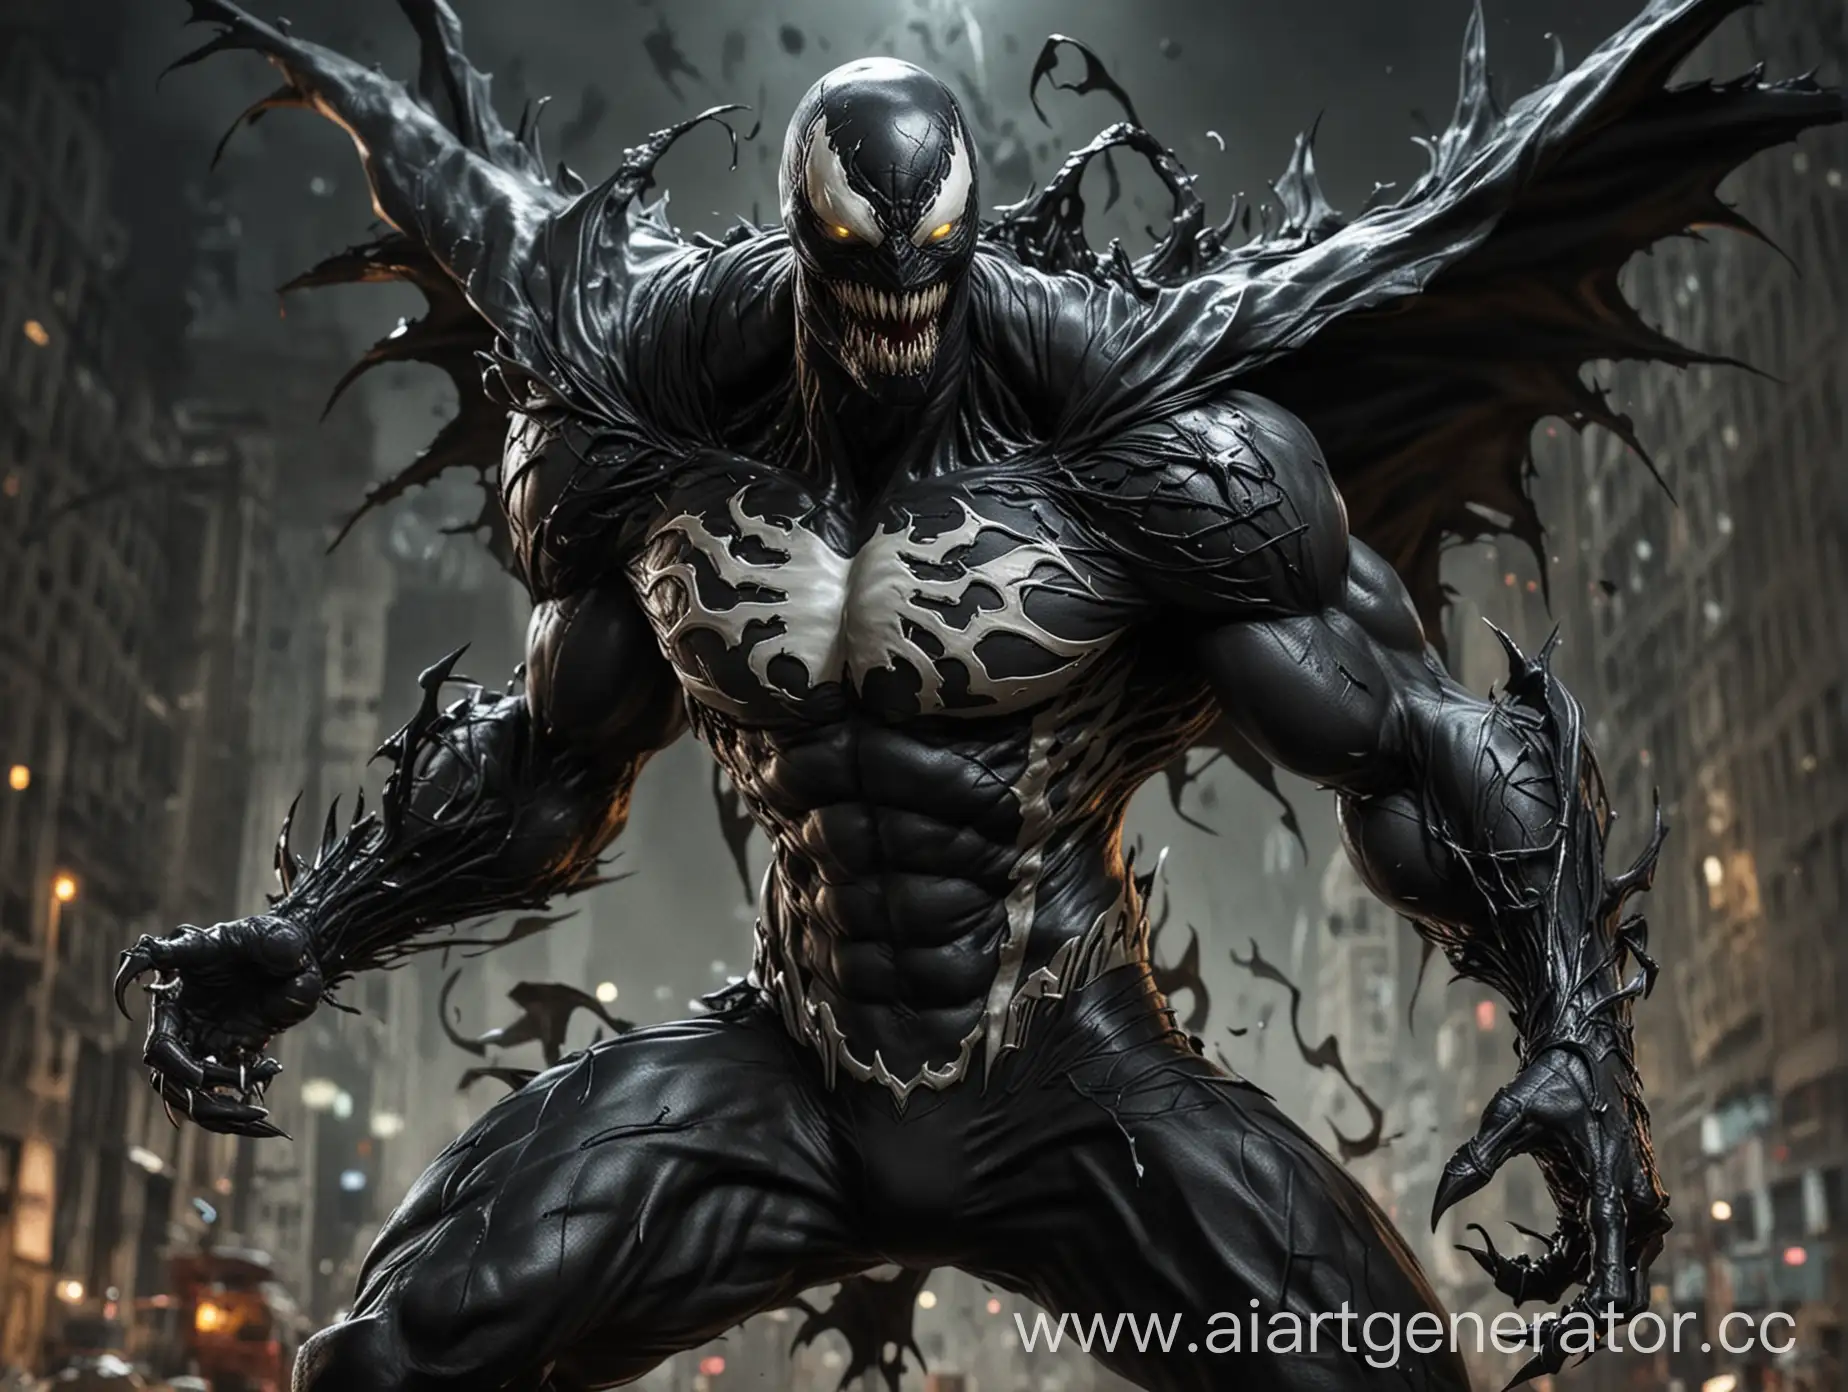 Dark-and-Powerful-Superhero-Similar-to-Spawn-and-Venom